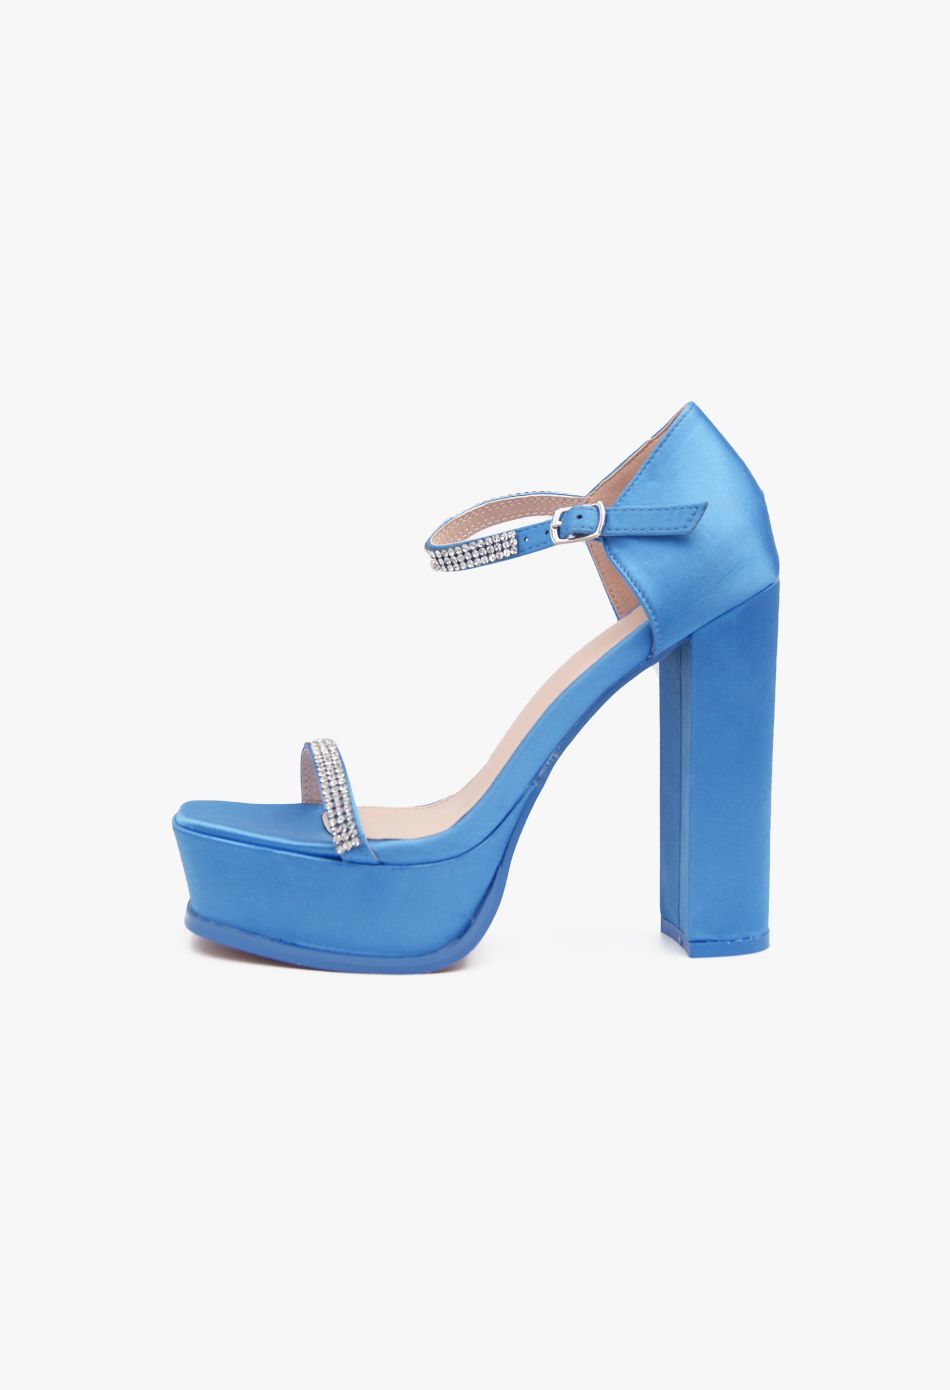 Σατέν Ψηλοτάκουνα Πέδιλα με Στρασ & Μπαρέτα και Φιάπα Μπλε / B5953-blue Ανοιχτά Παπούτσια joya.gr